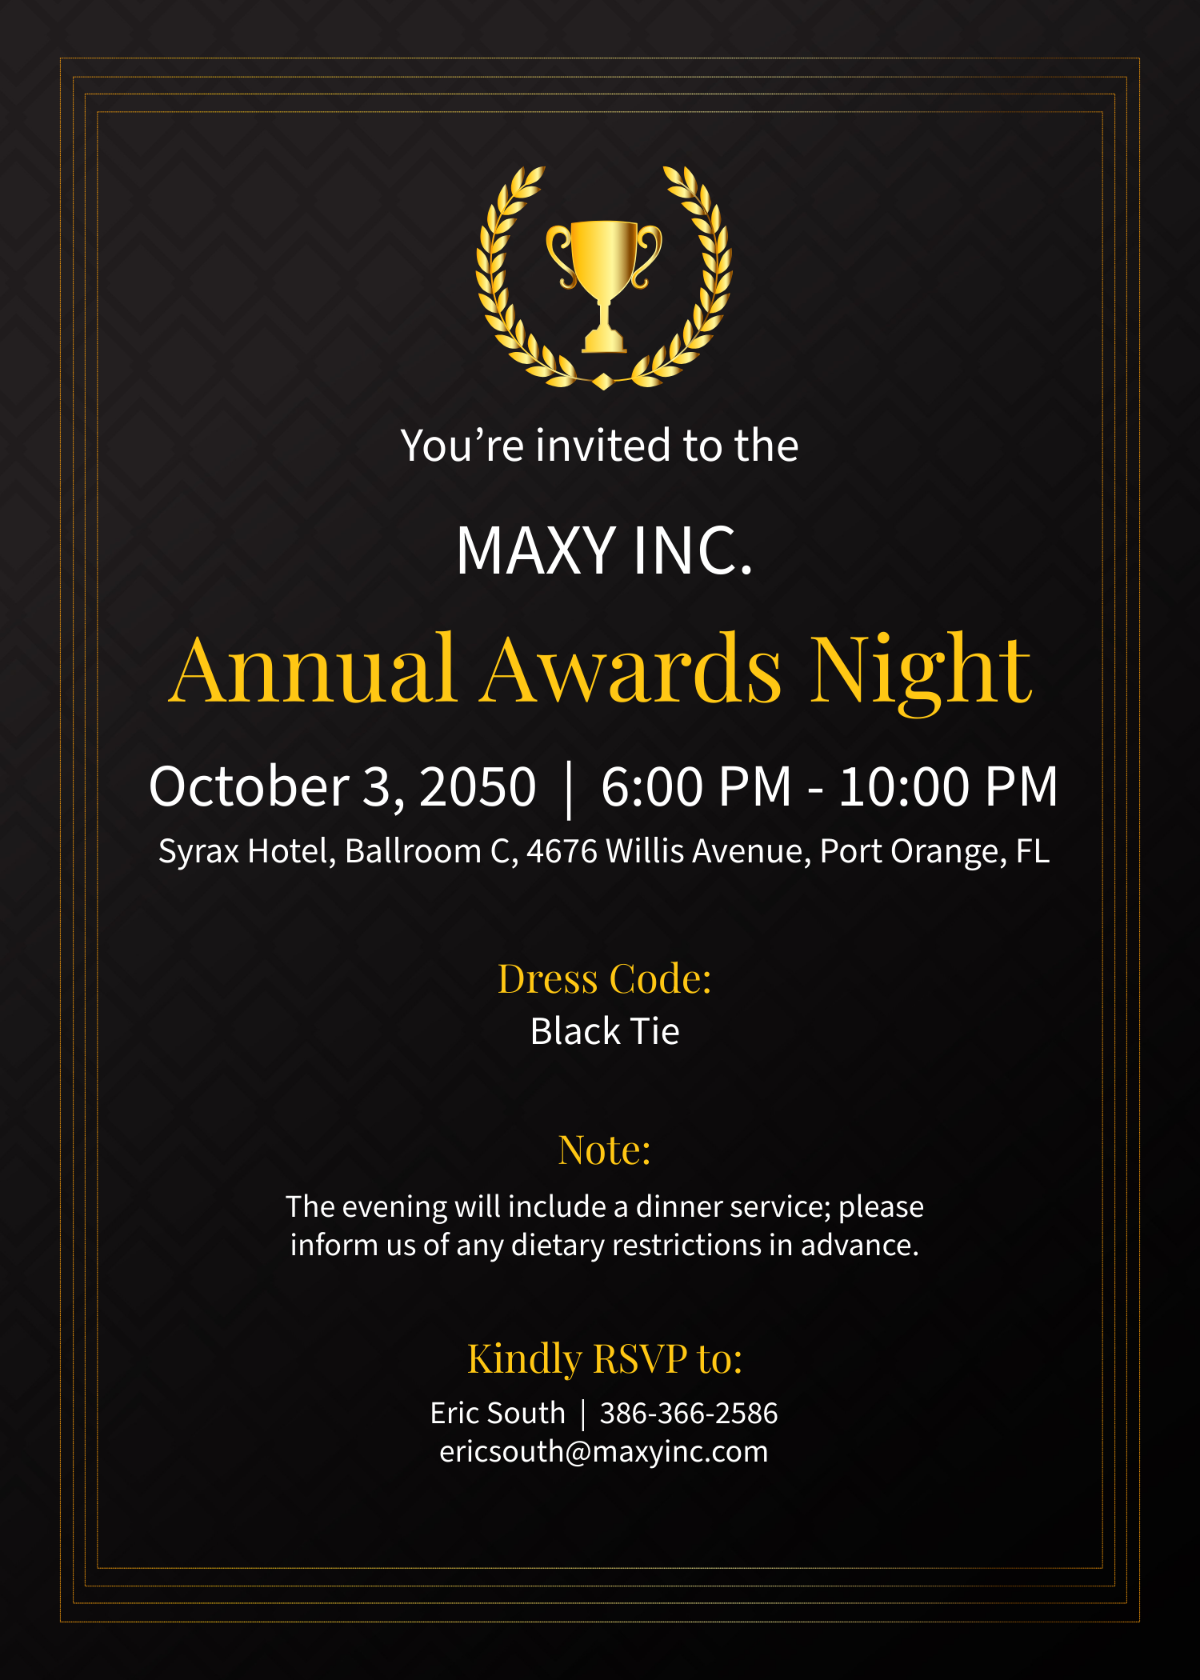 Program Awards Night Invitation